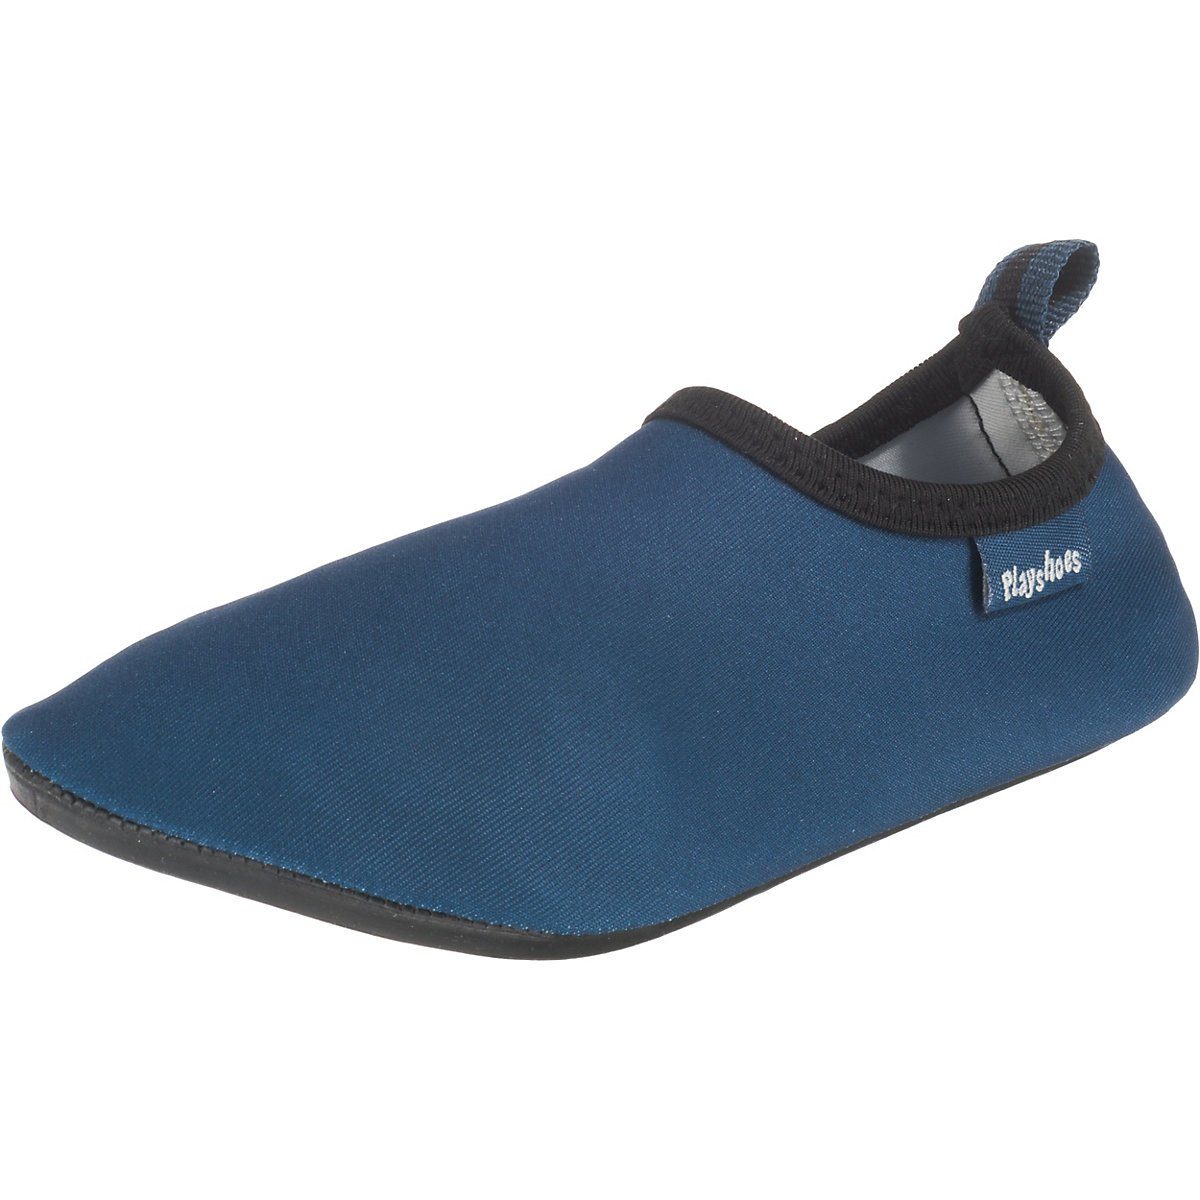 Playshoes Badeschuhe Wasserschuhe Uni Badeschuh Passform, blau Sohle rutschhemmender Schwimmschuhe, flexible Barfuß-Schuh mit